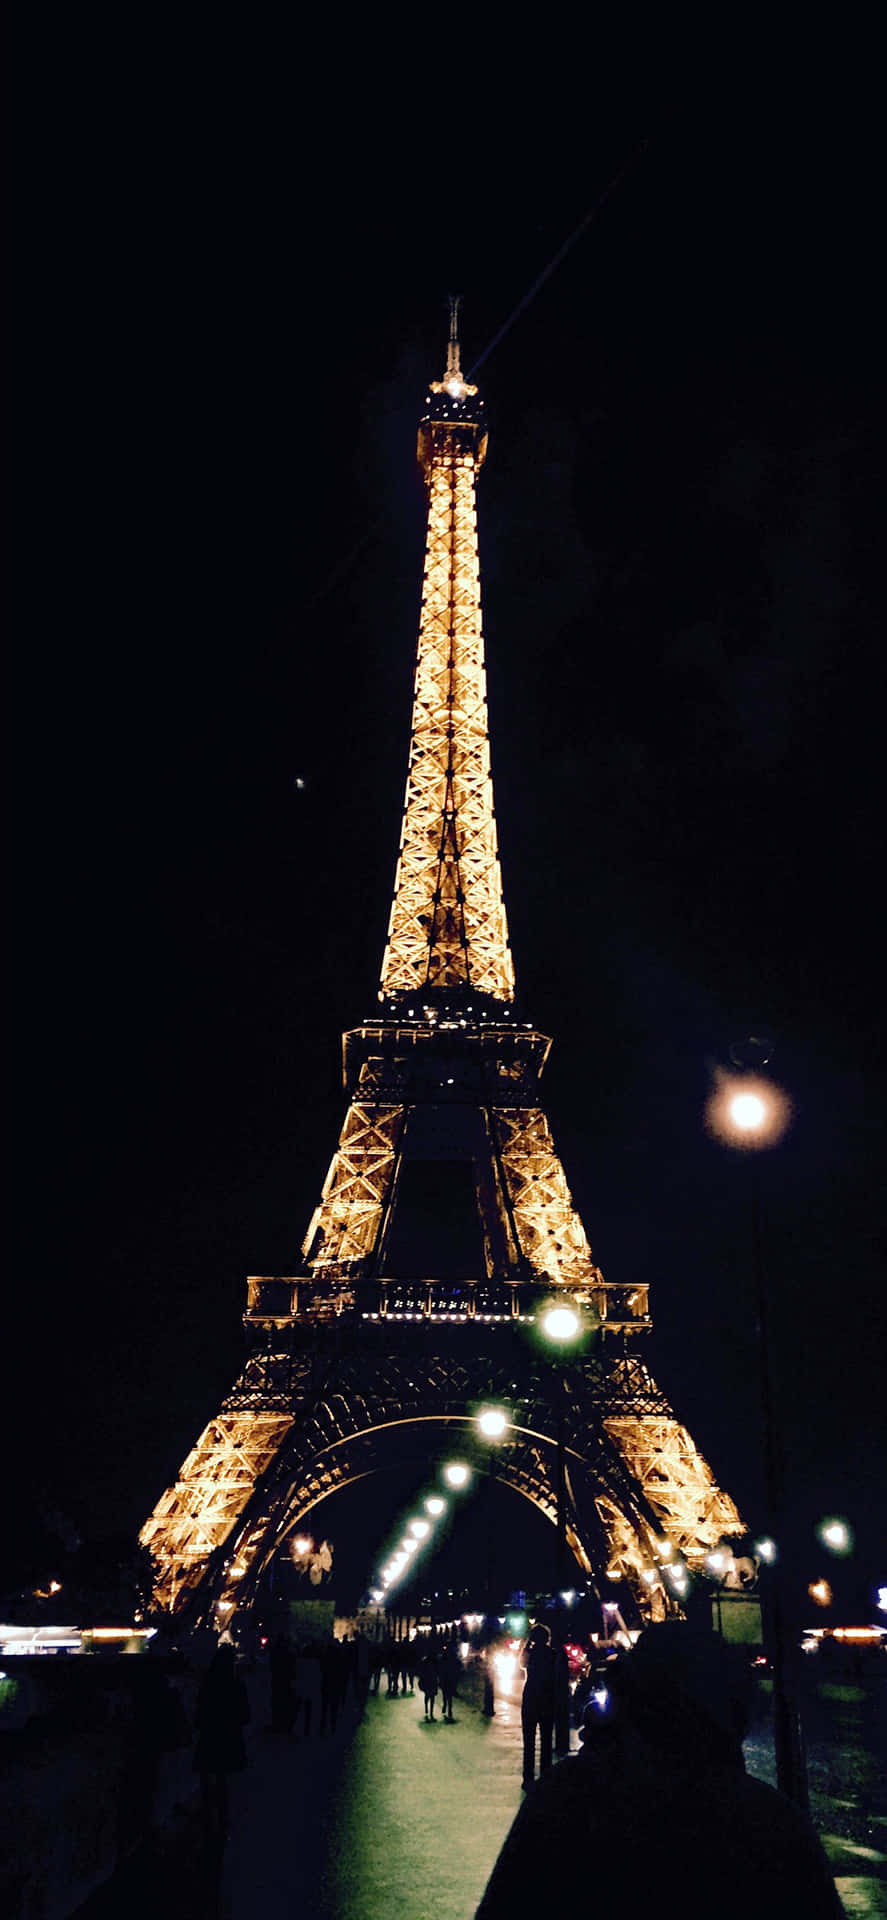 "Explore the City of Lights: Paris"